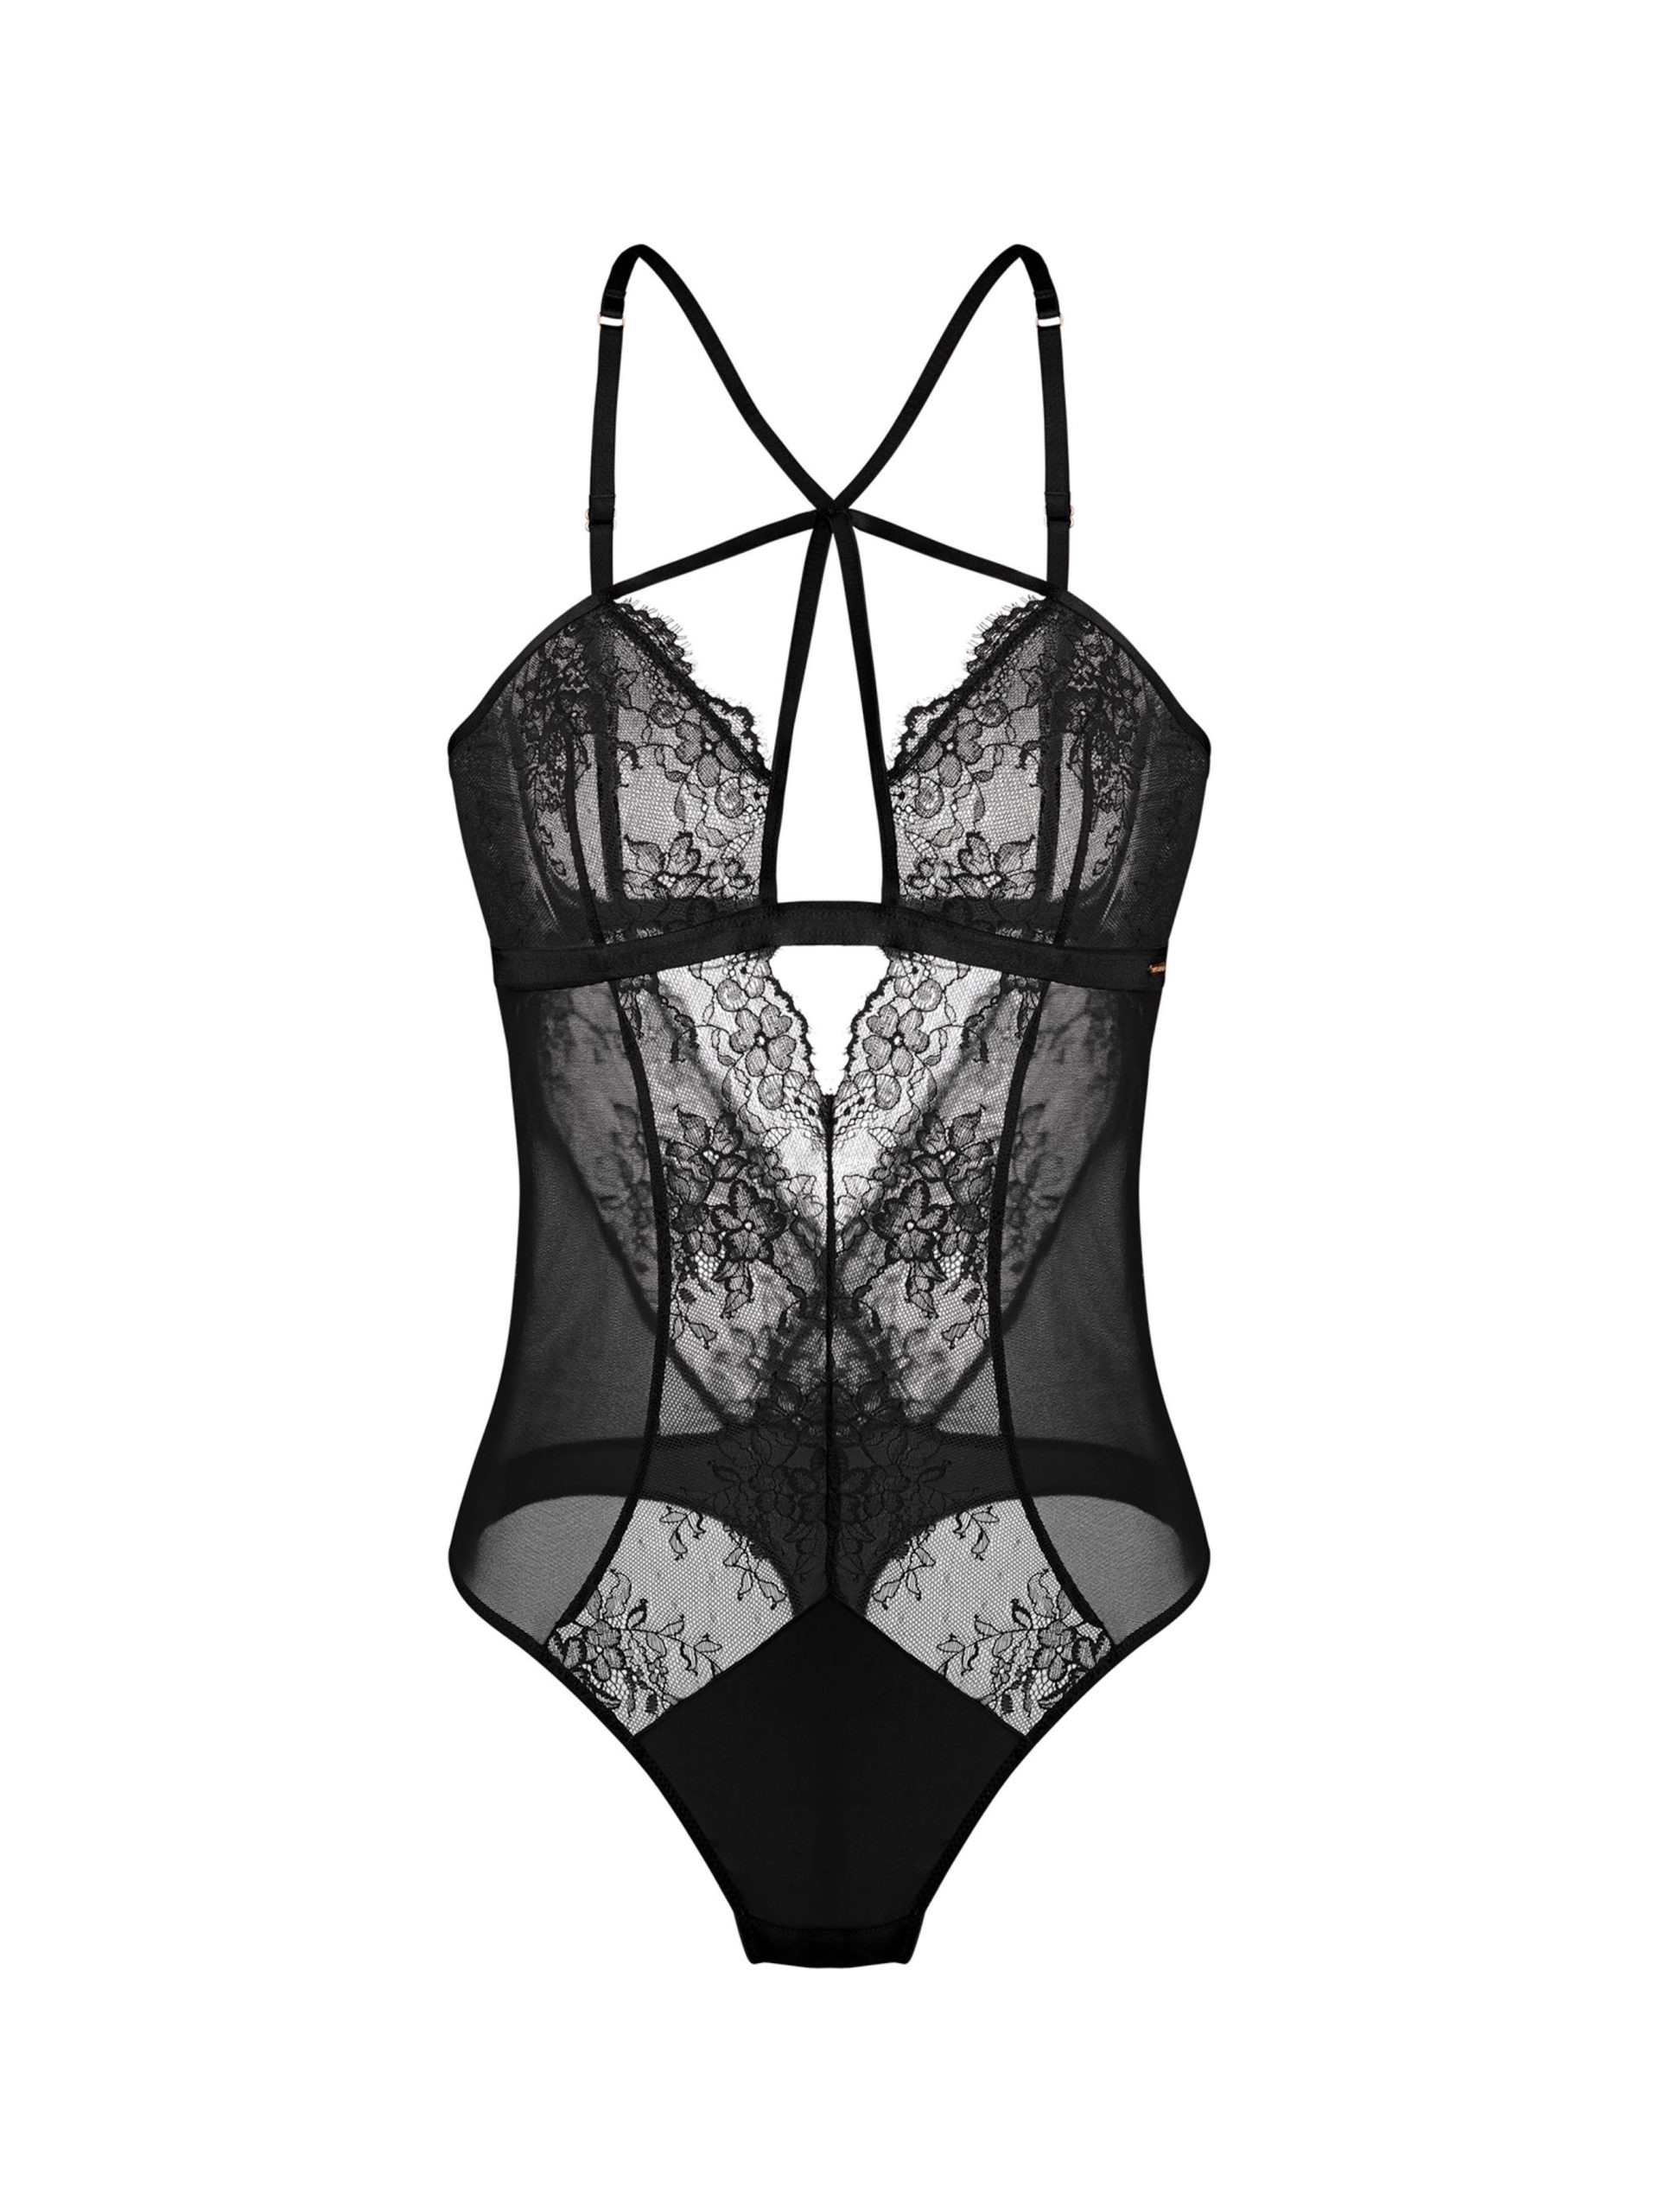 Gabrielle Graphic Bodysuit – PayLex Boutique